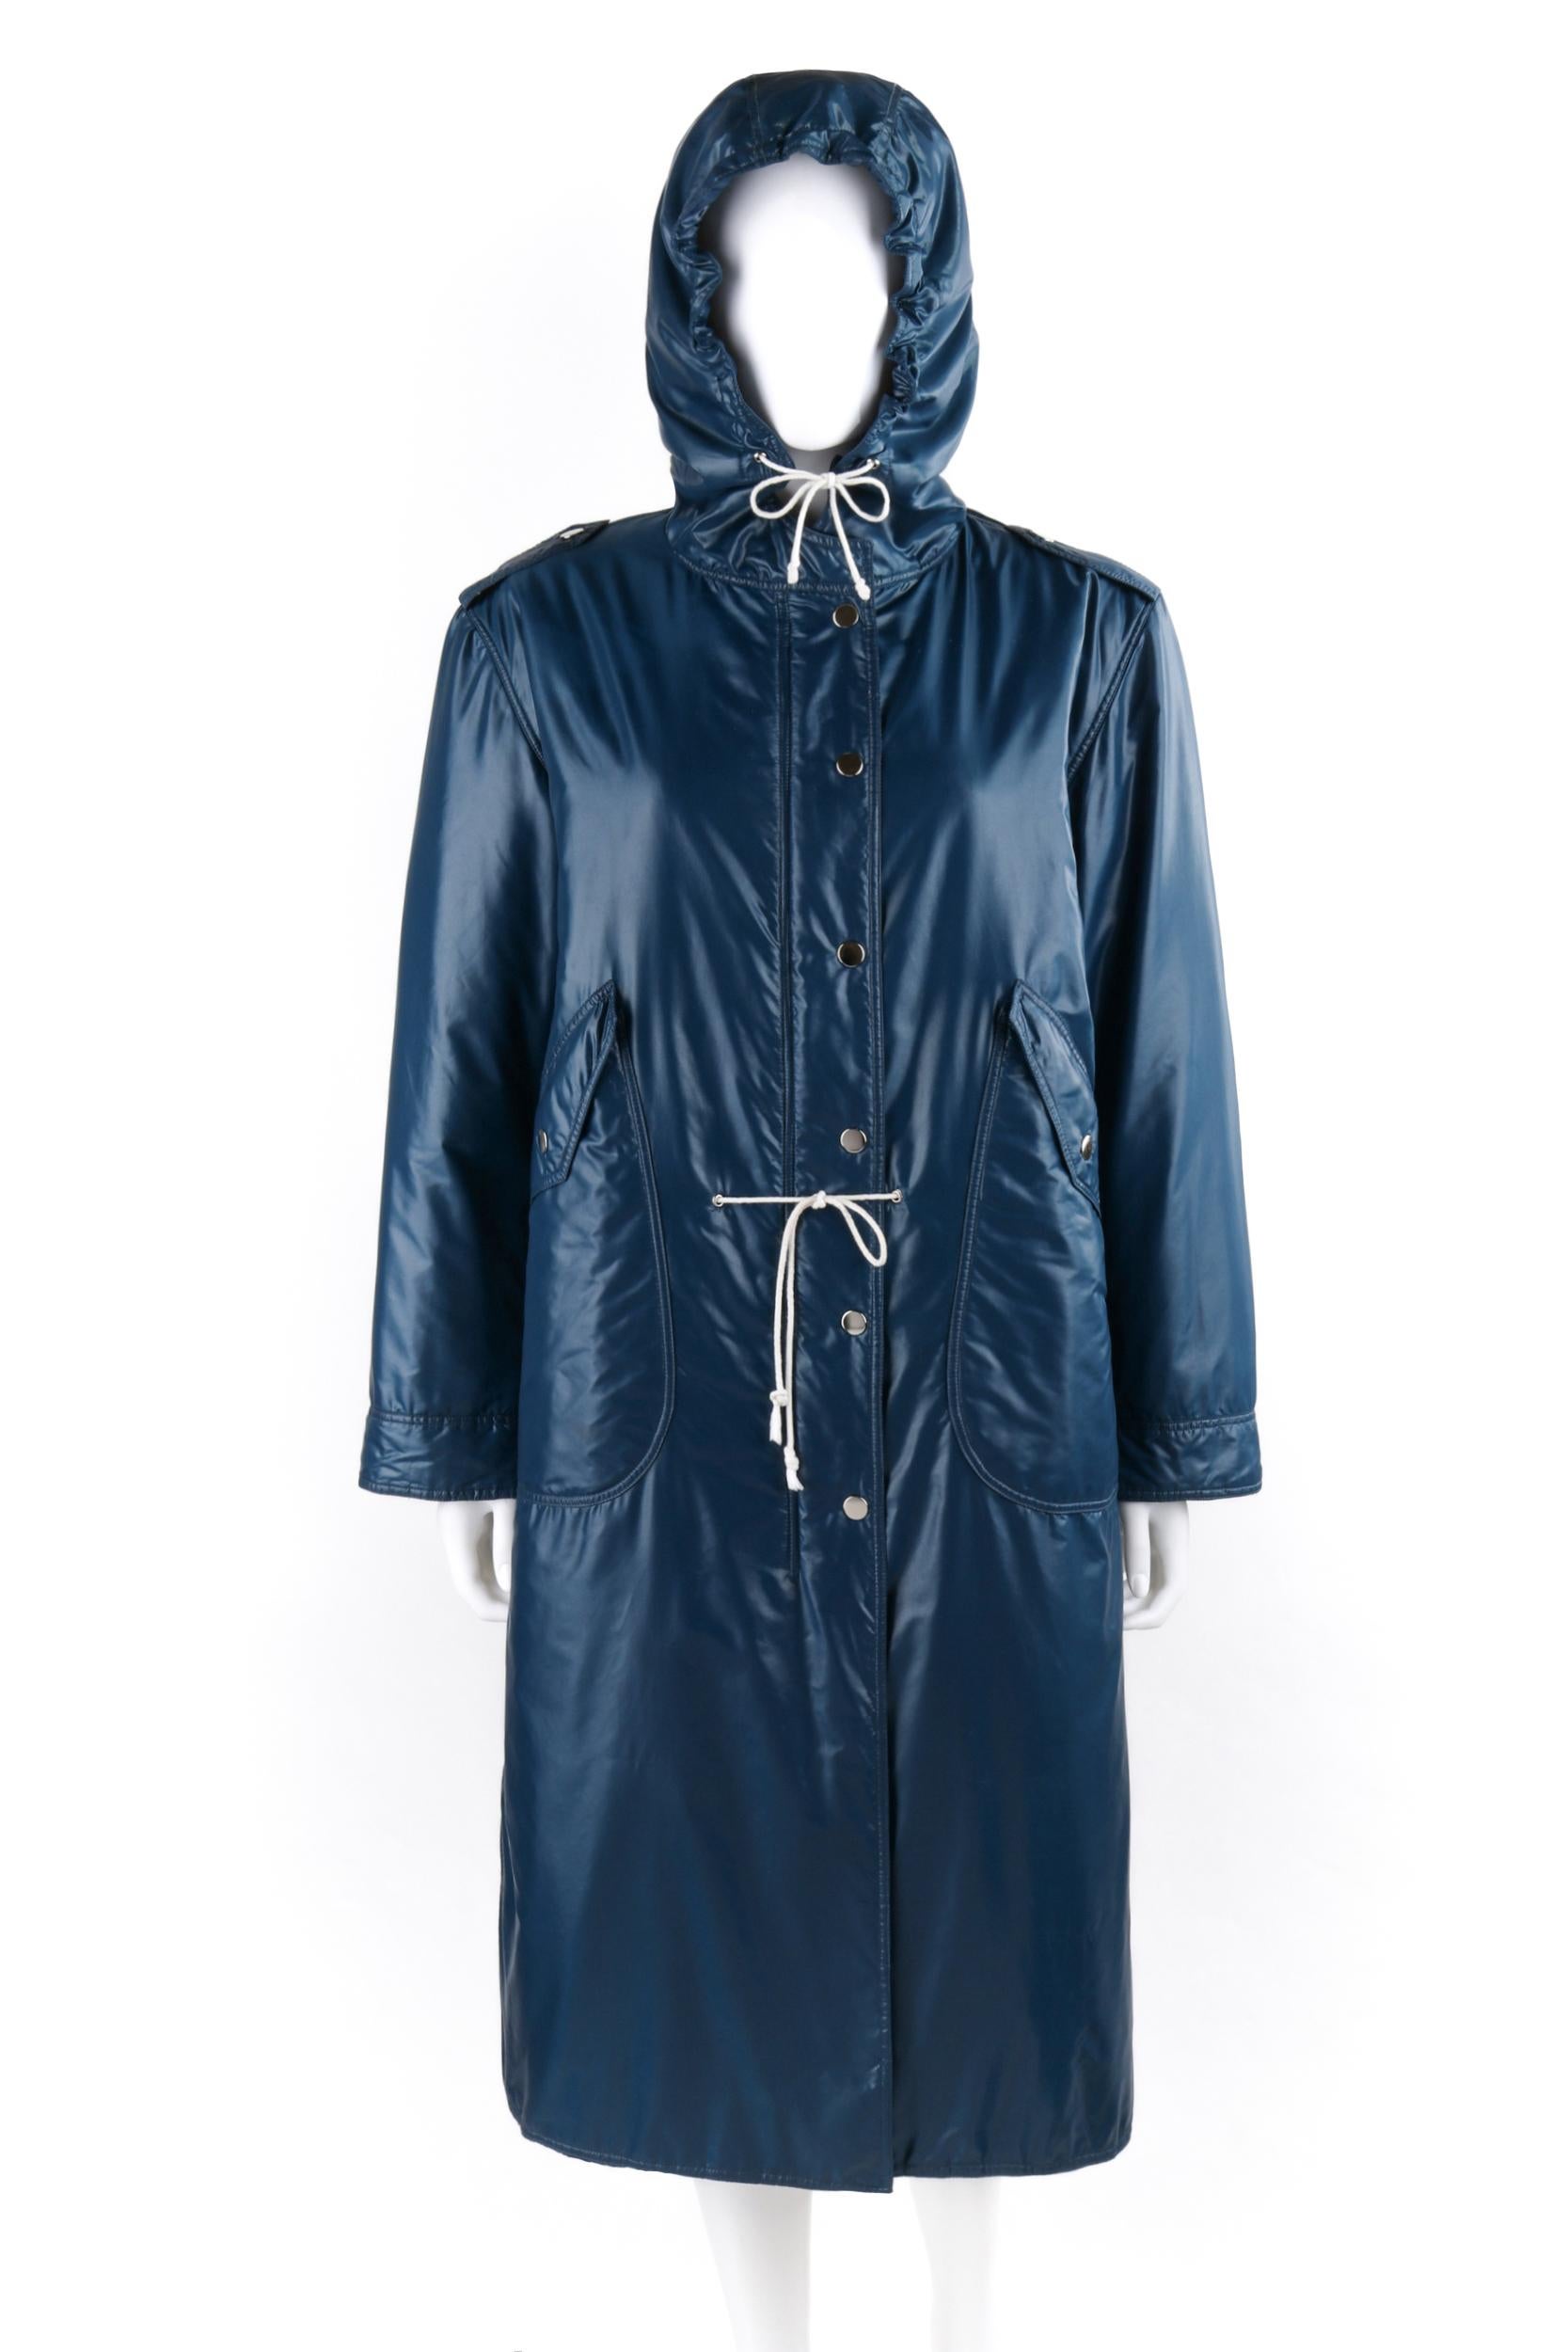 1970s raincoat